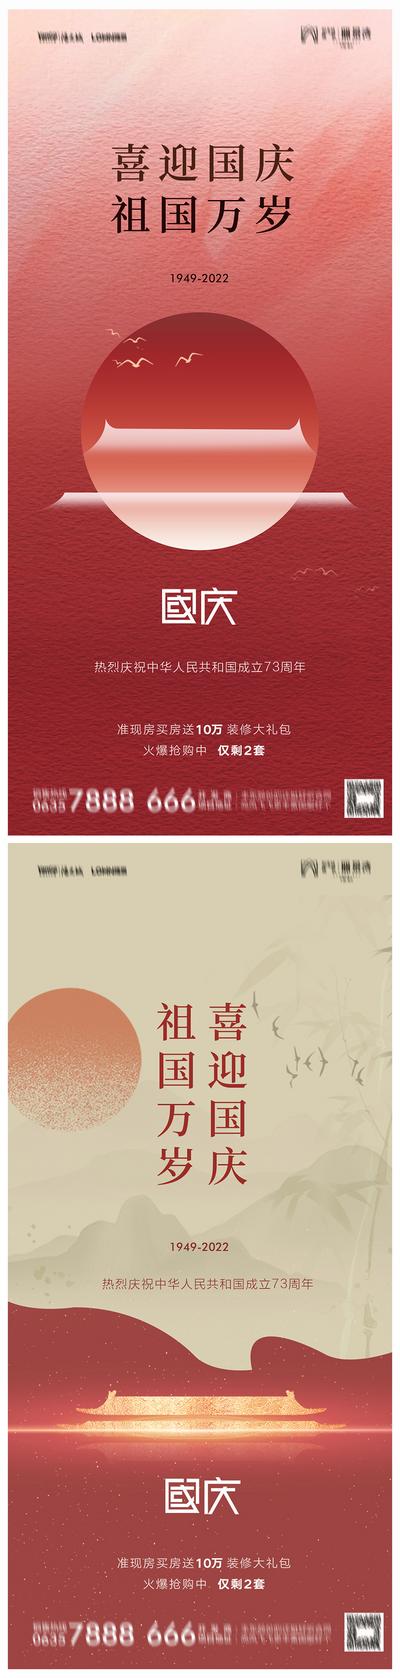 南门网 海报 地产 公历节日 国庆节